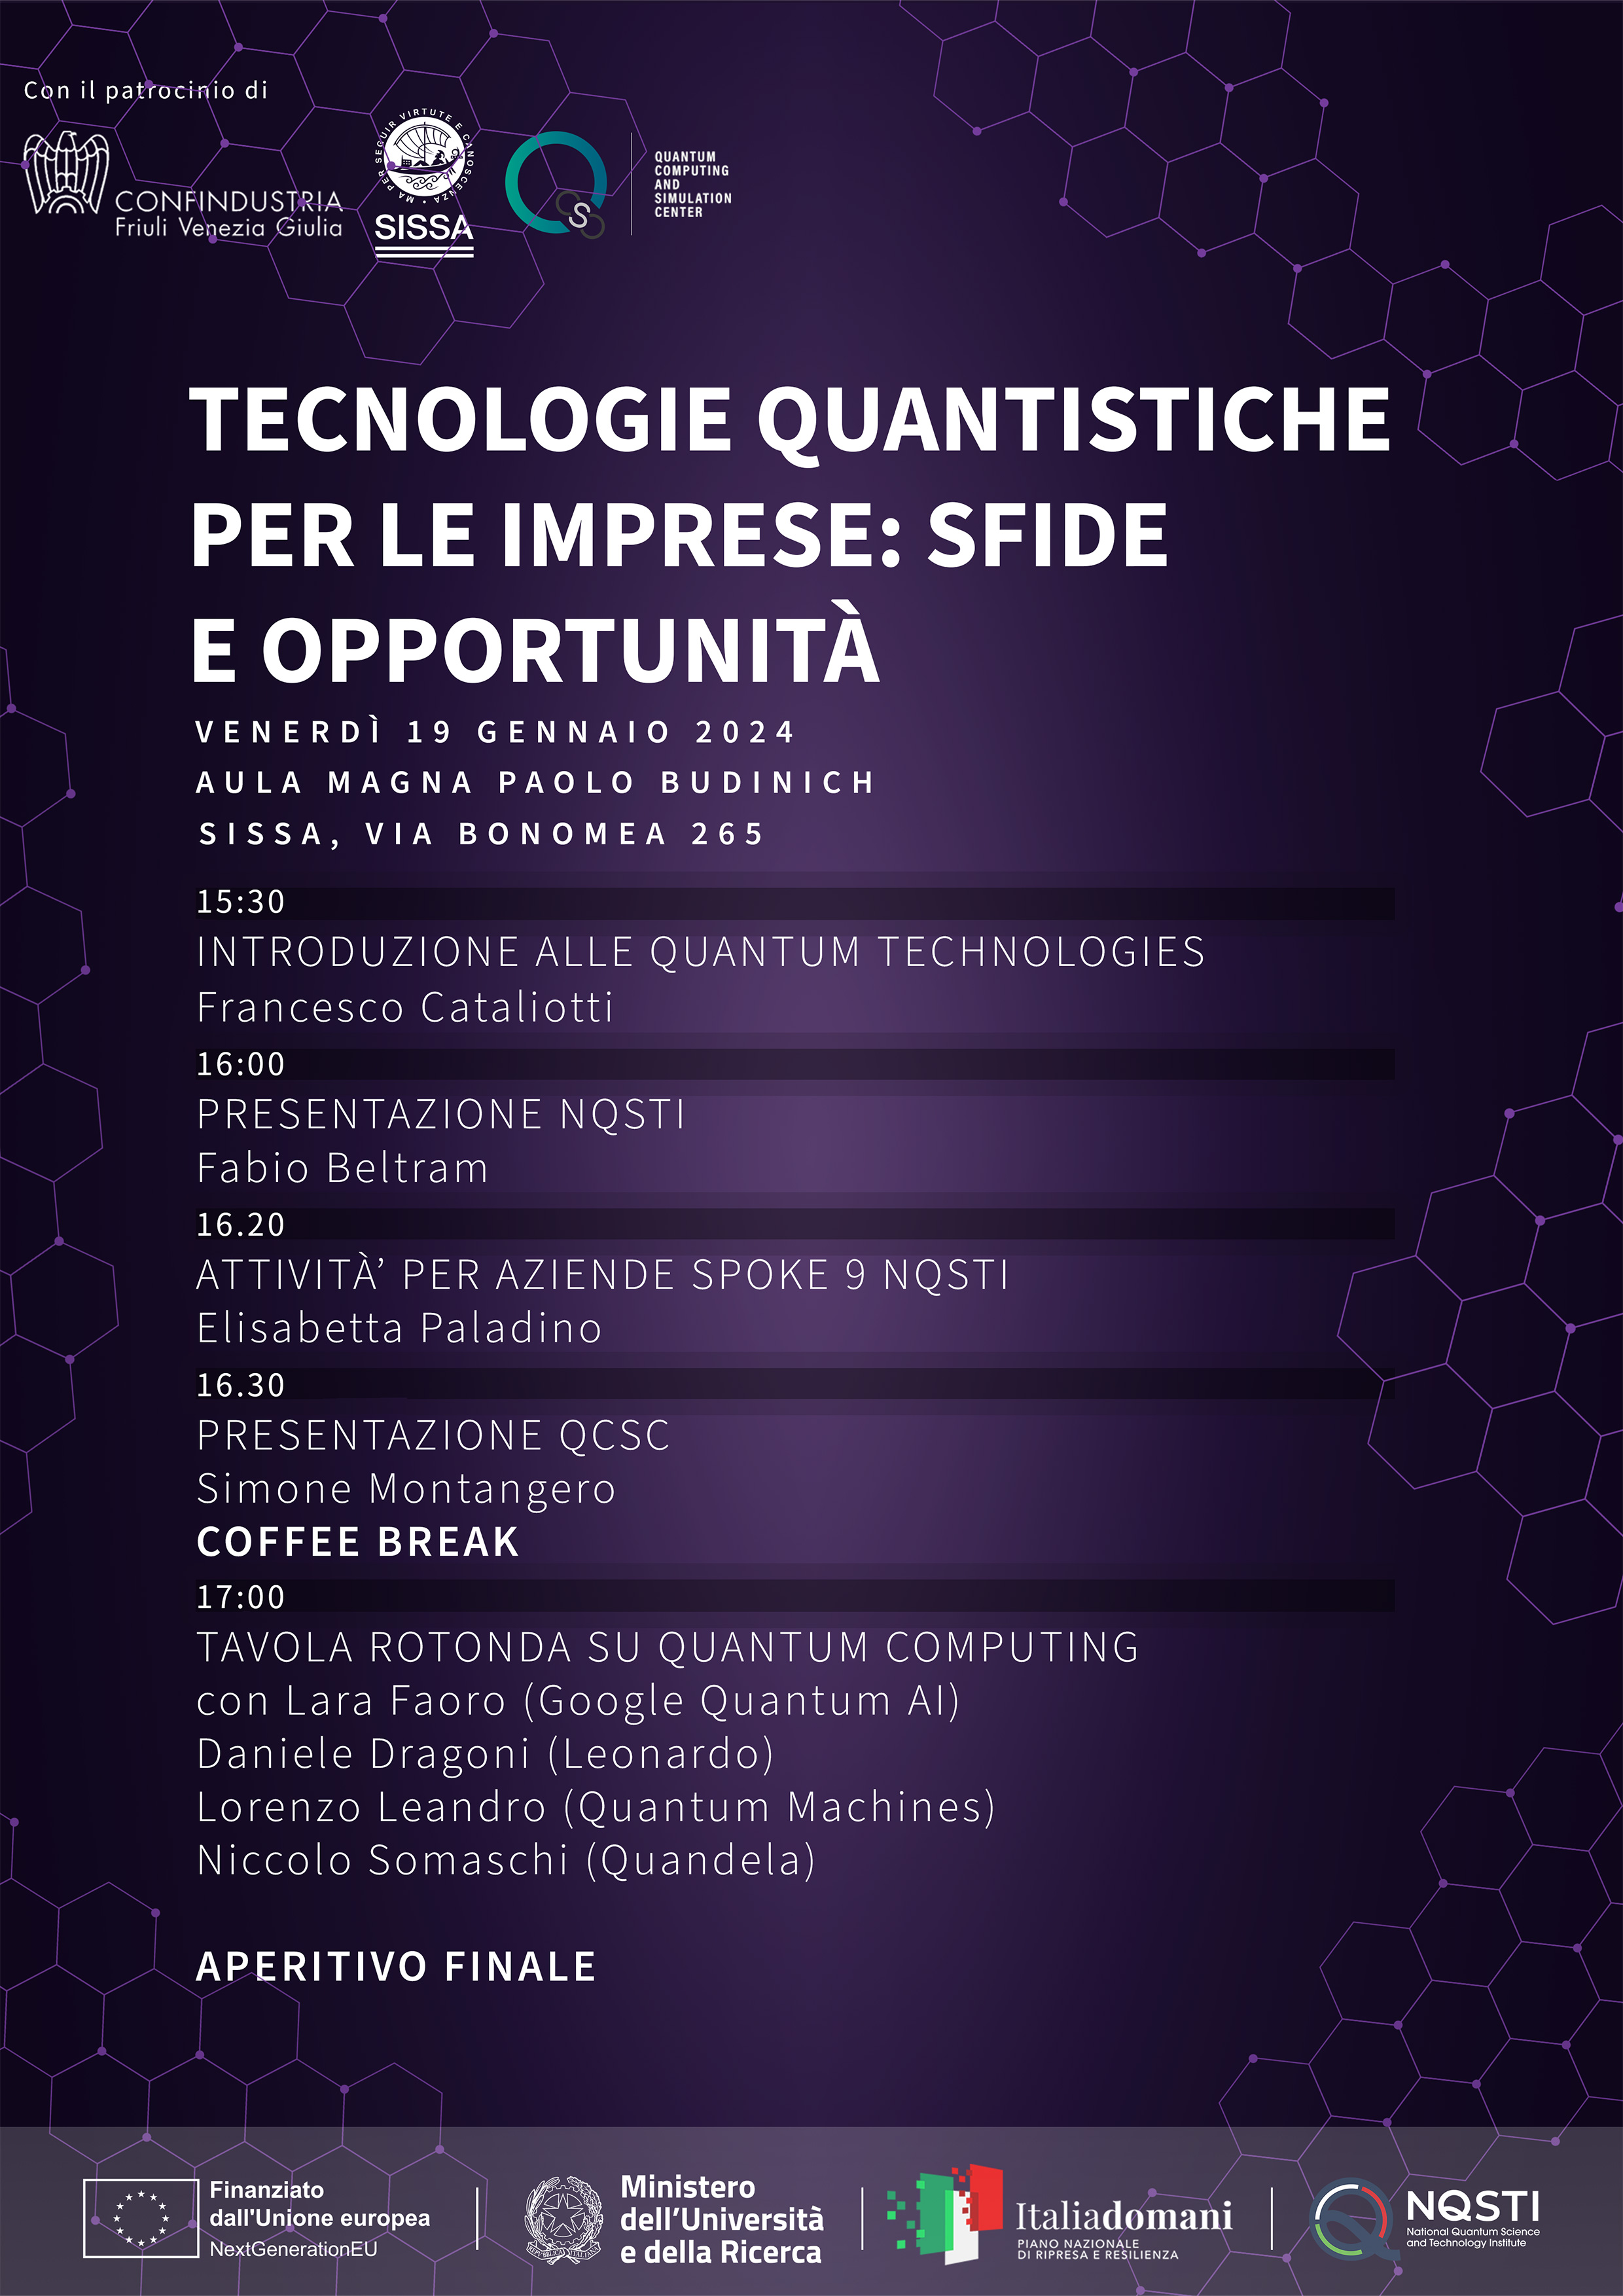 Tecnologie quantistiche per le imprese: sfide e opportunità programme